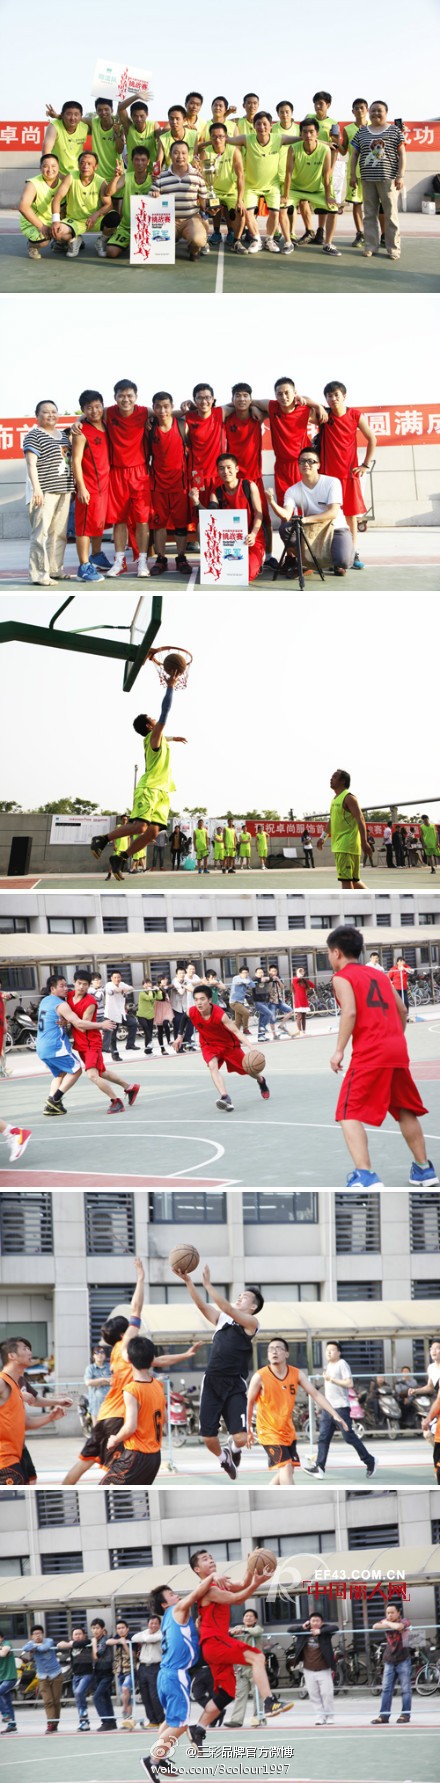 卓尚服饰(杭州)有限公司首届篮球比赛火热开赛